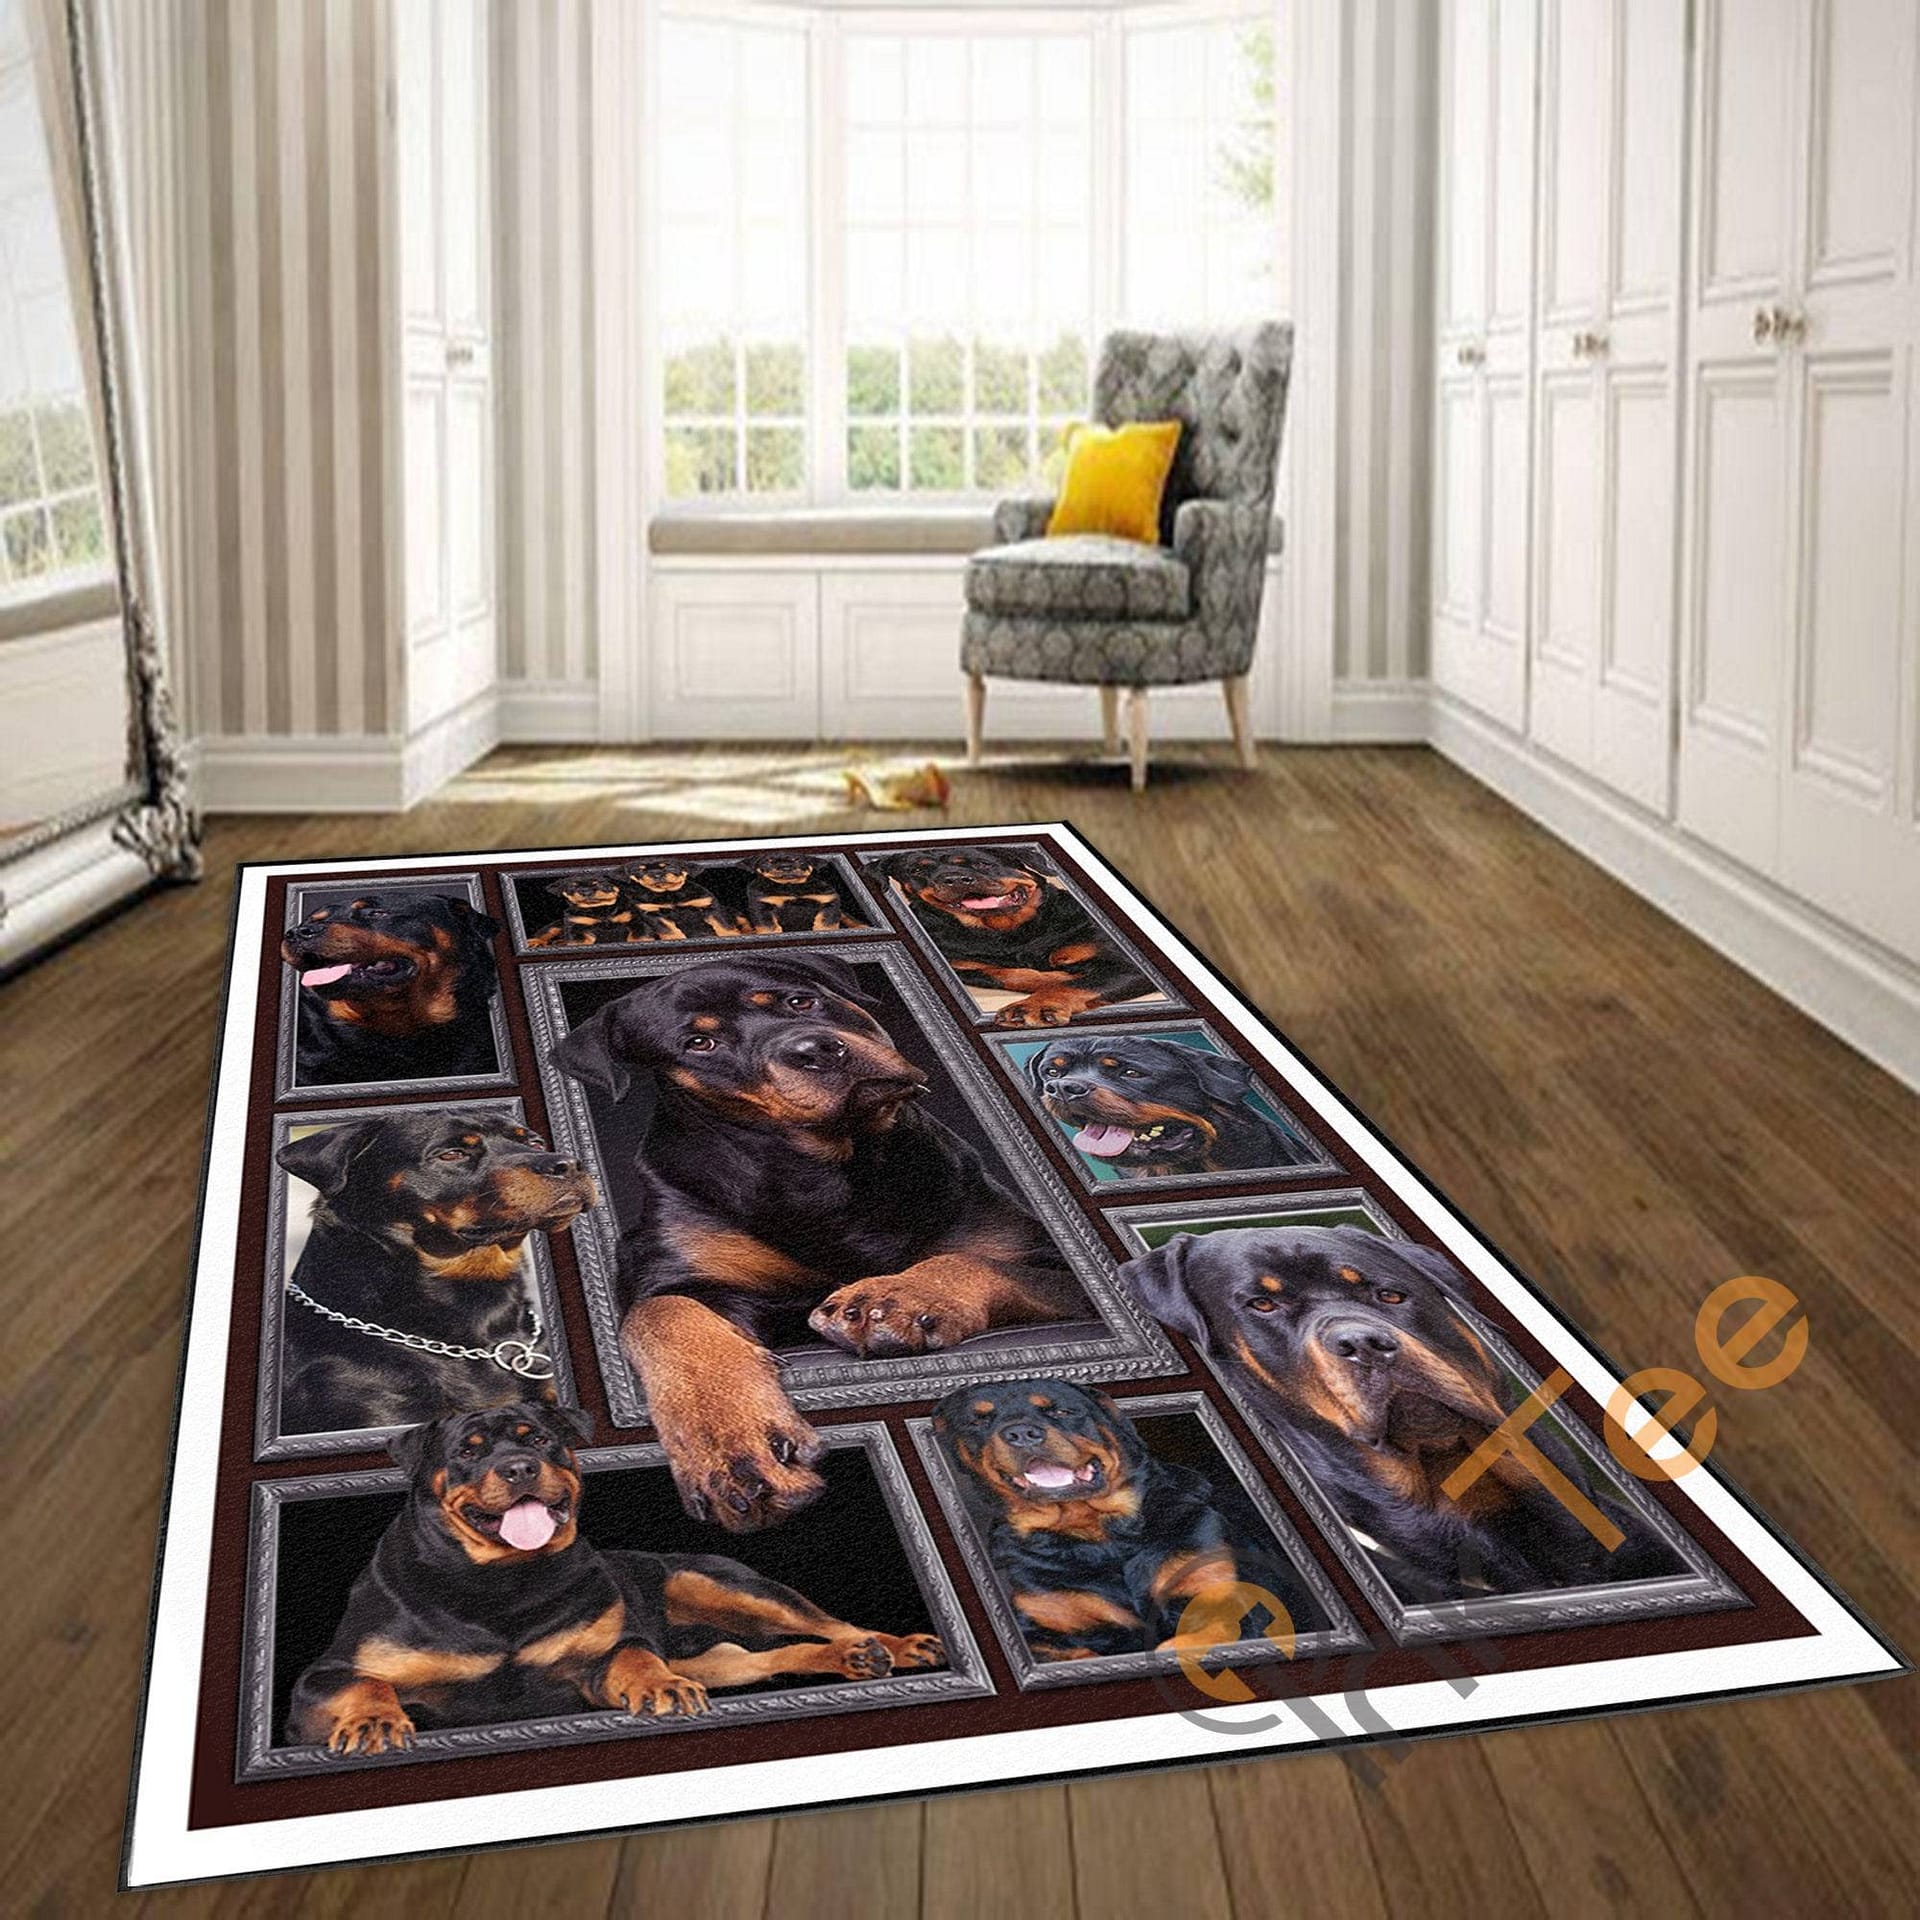 Black Dog Carpet For Living Room Kitchen Bedroom Gift Family Rug